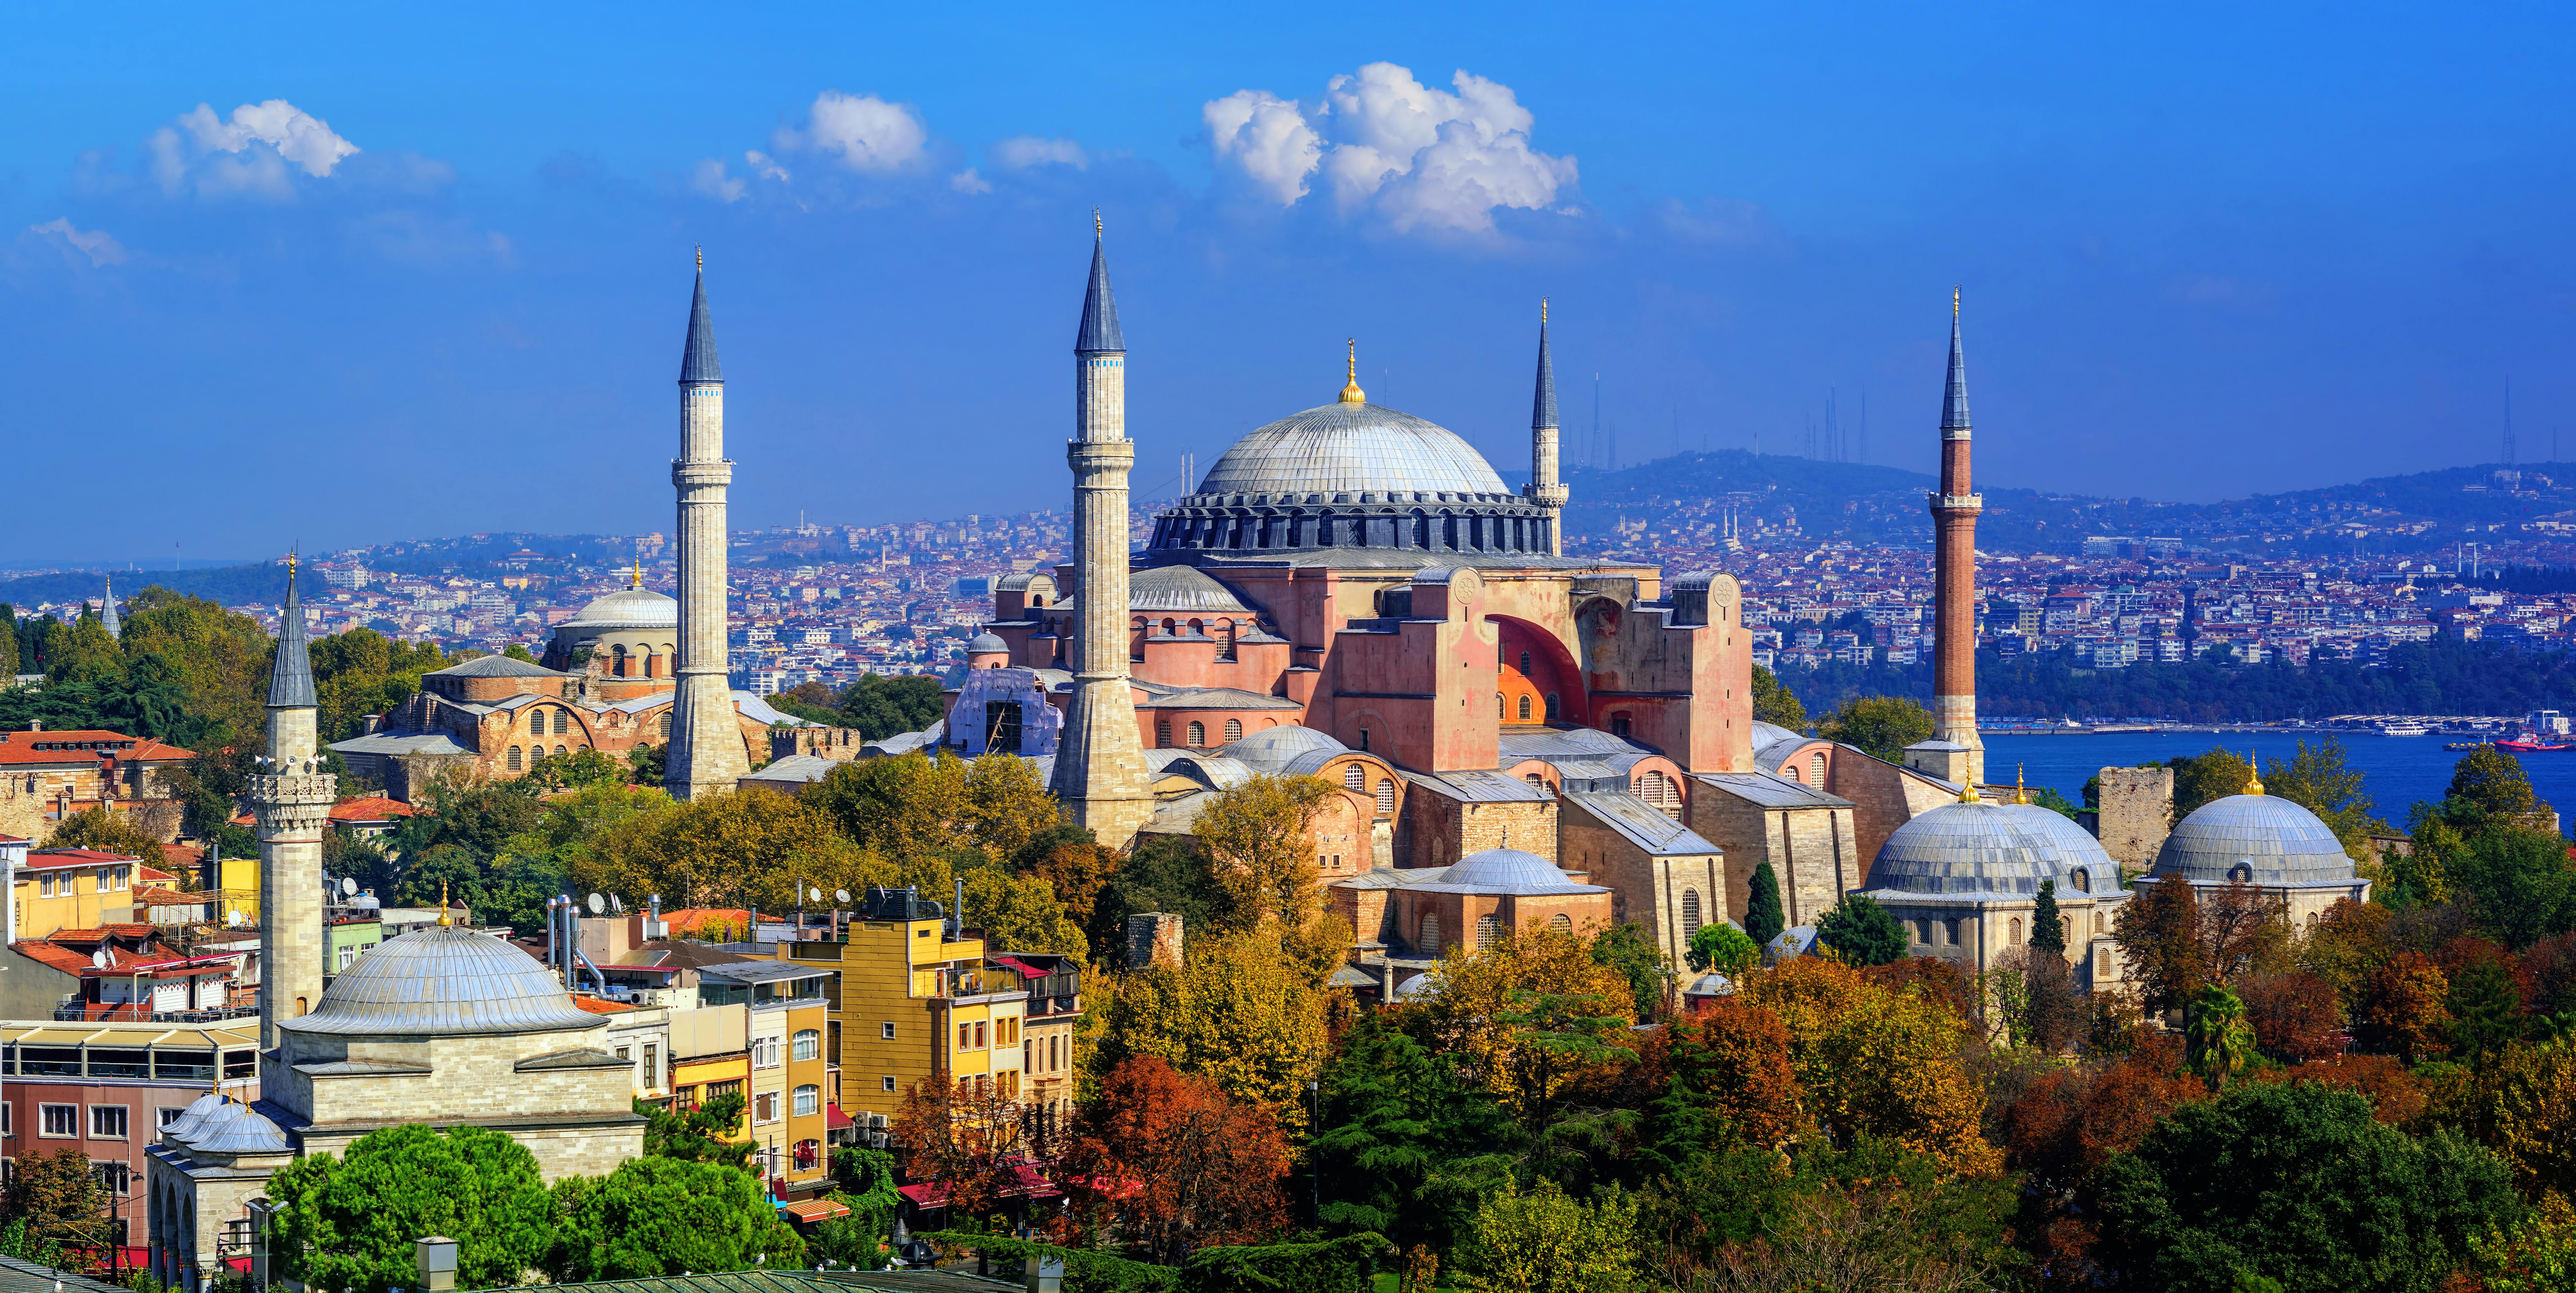 Zwiedzanie Hagia Sophia, Pałacu Topkapi i Cysterny Bazyliki w Stambule